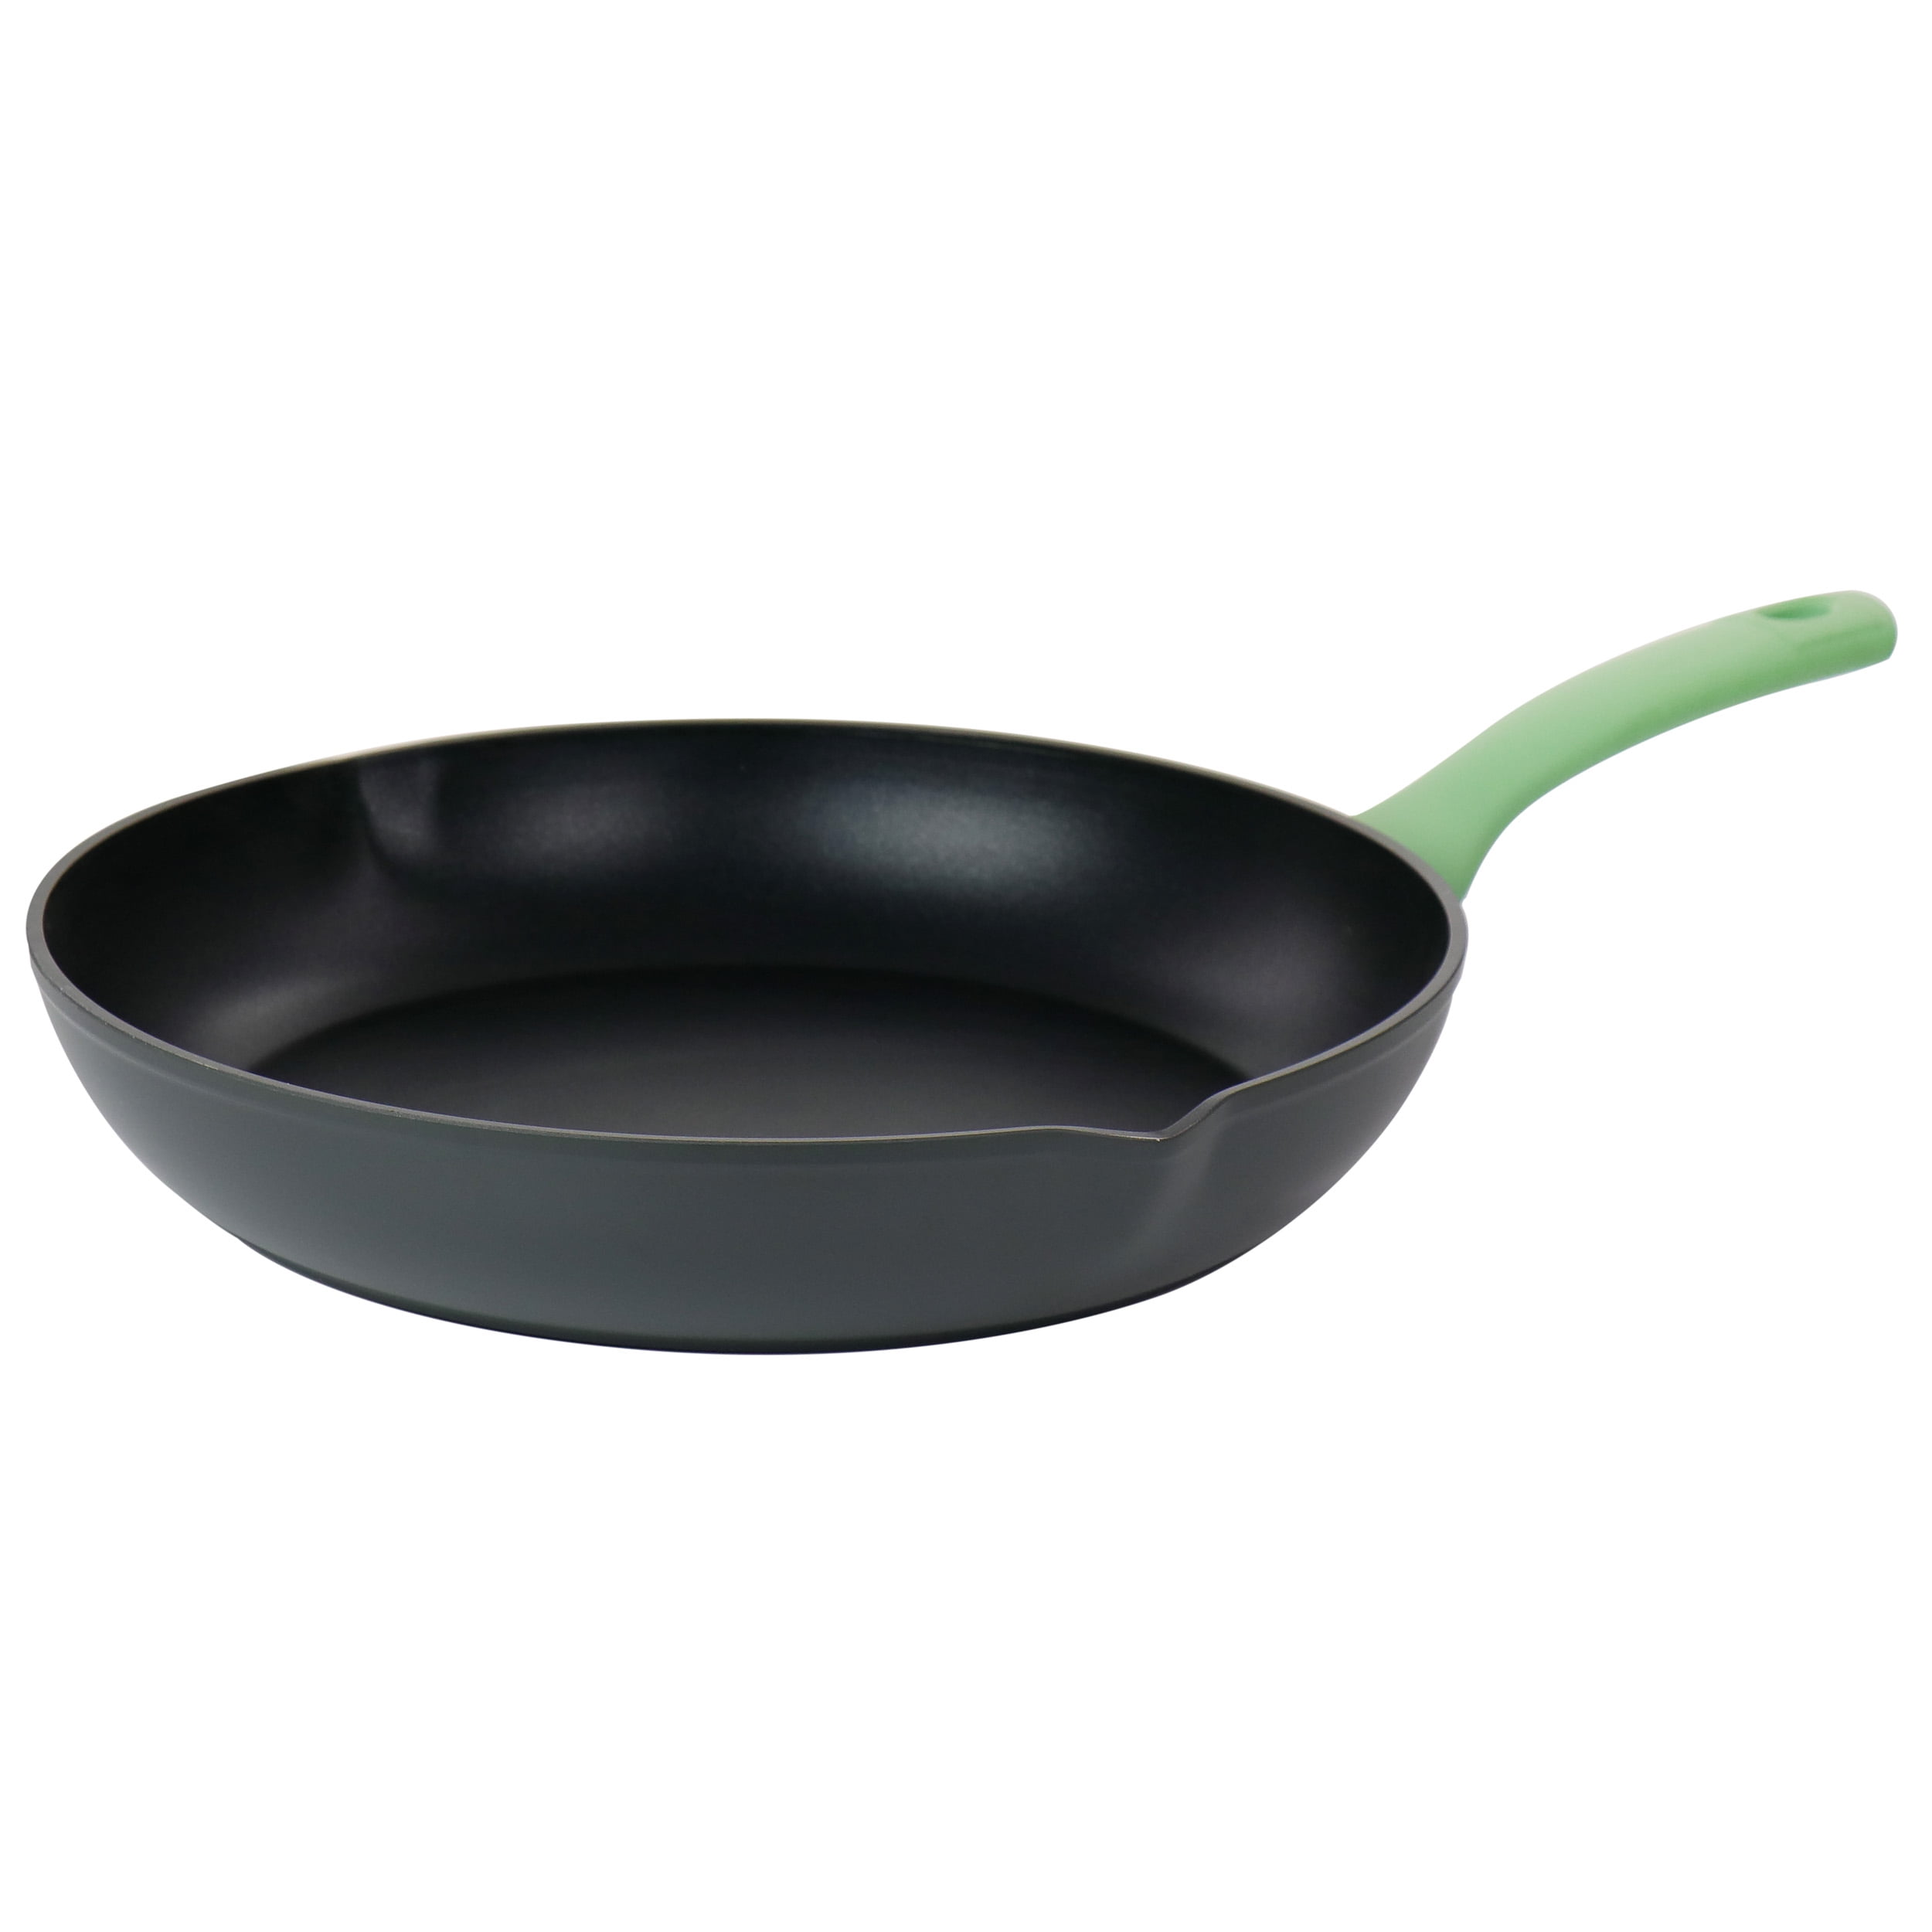 ROCKURWOK Ceramic Nonstick 12in Deep Frying Pan with Lid, 5qt Jumbo Co -  Jolinne